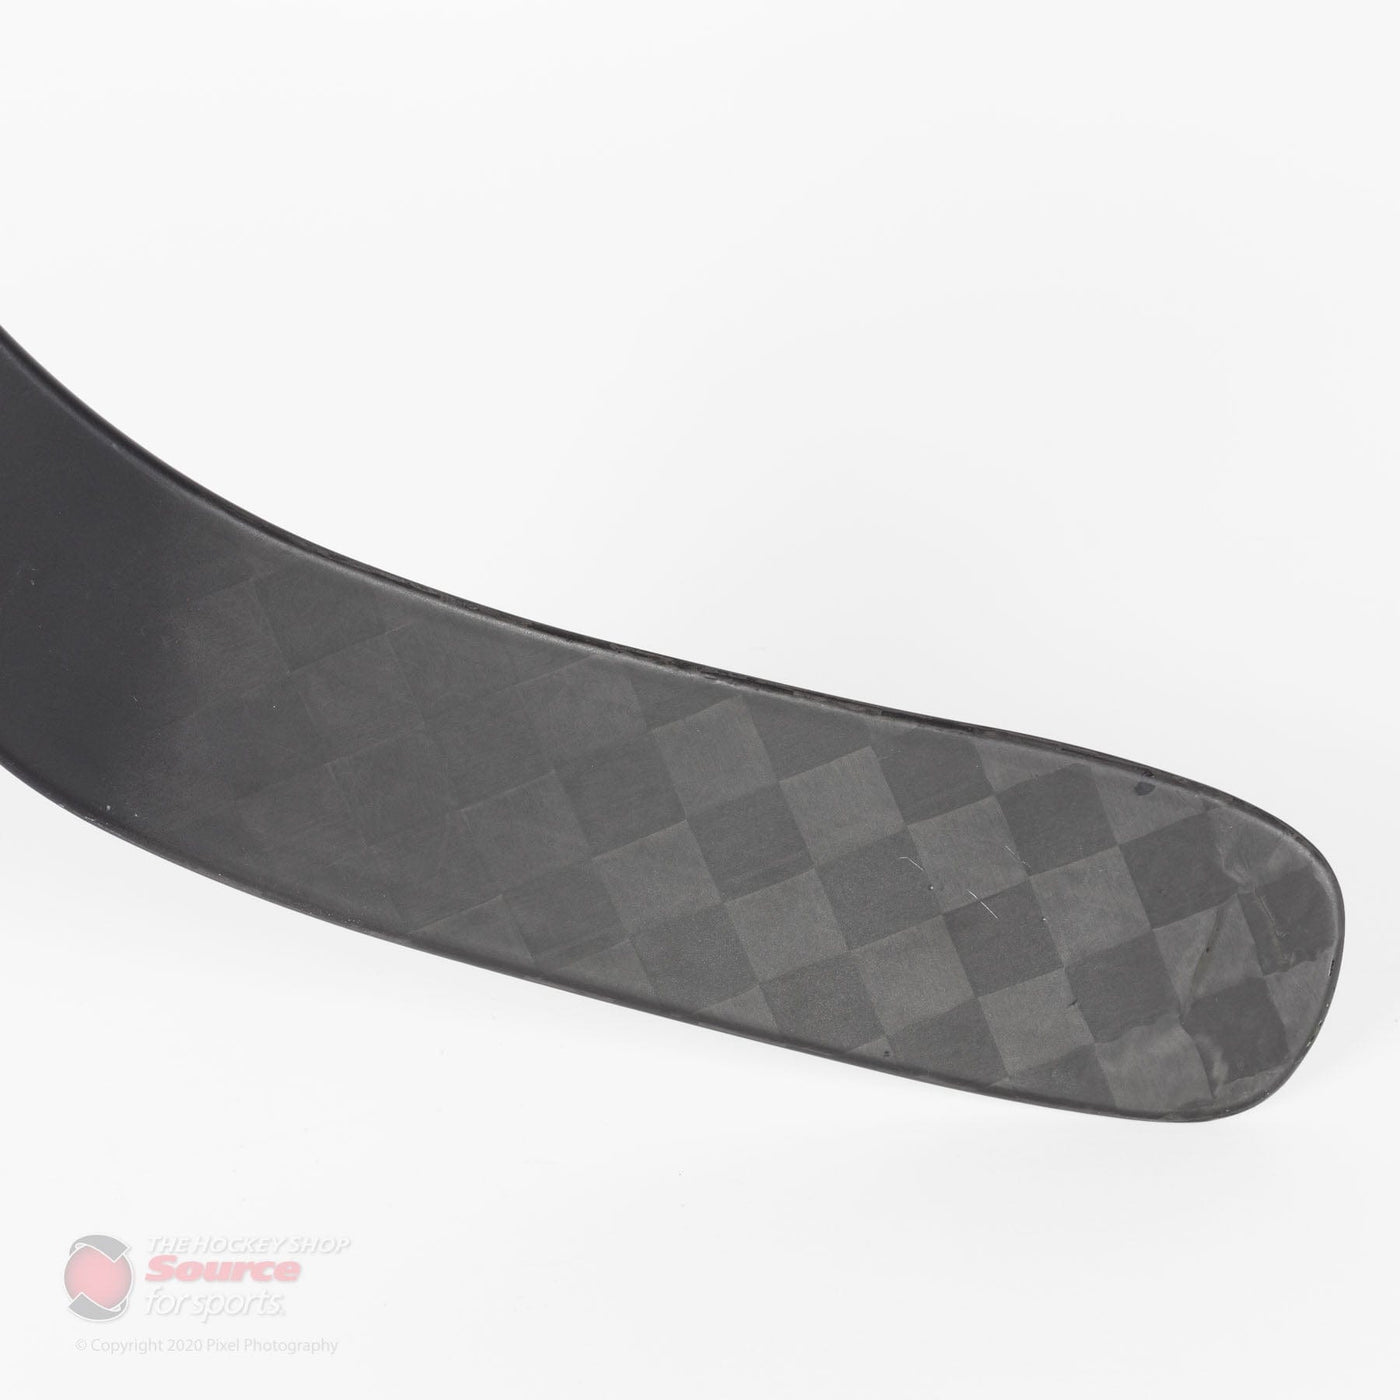 TRUE AX9 Senior Standard Composite Hockey Blade